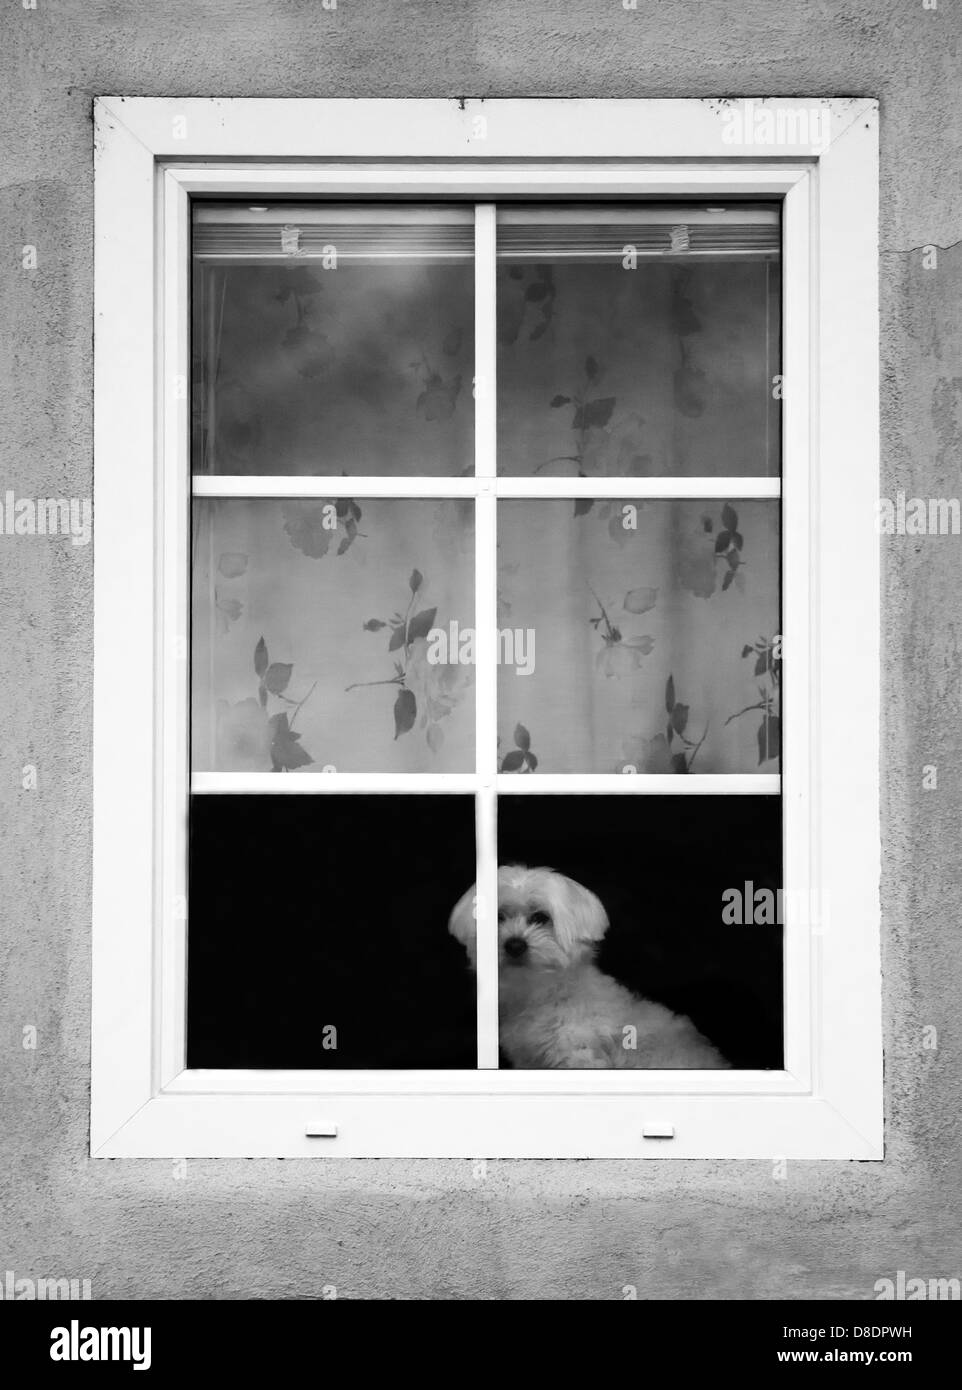 Piccolo Cane bianco sul ripiano della finestra. Foto Stock